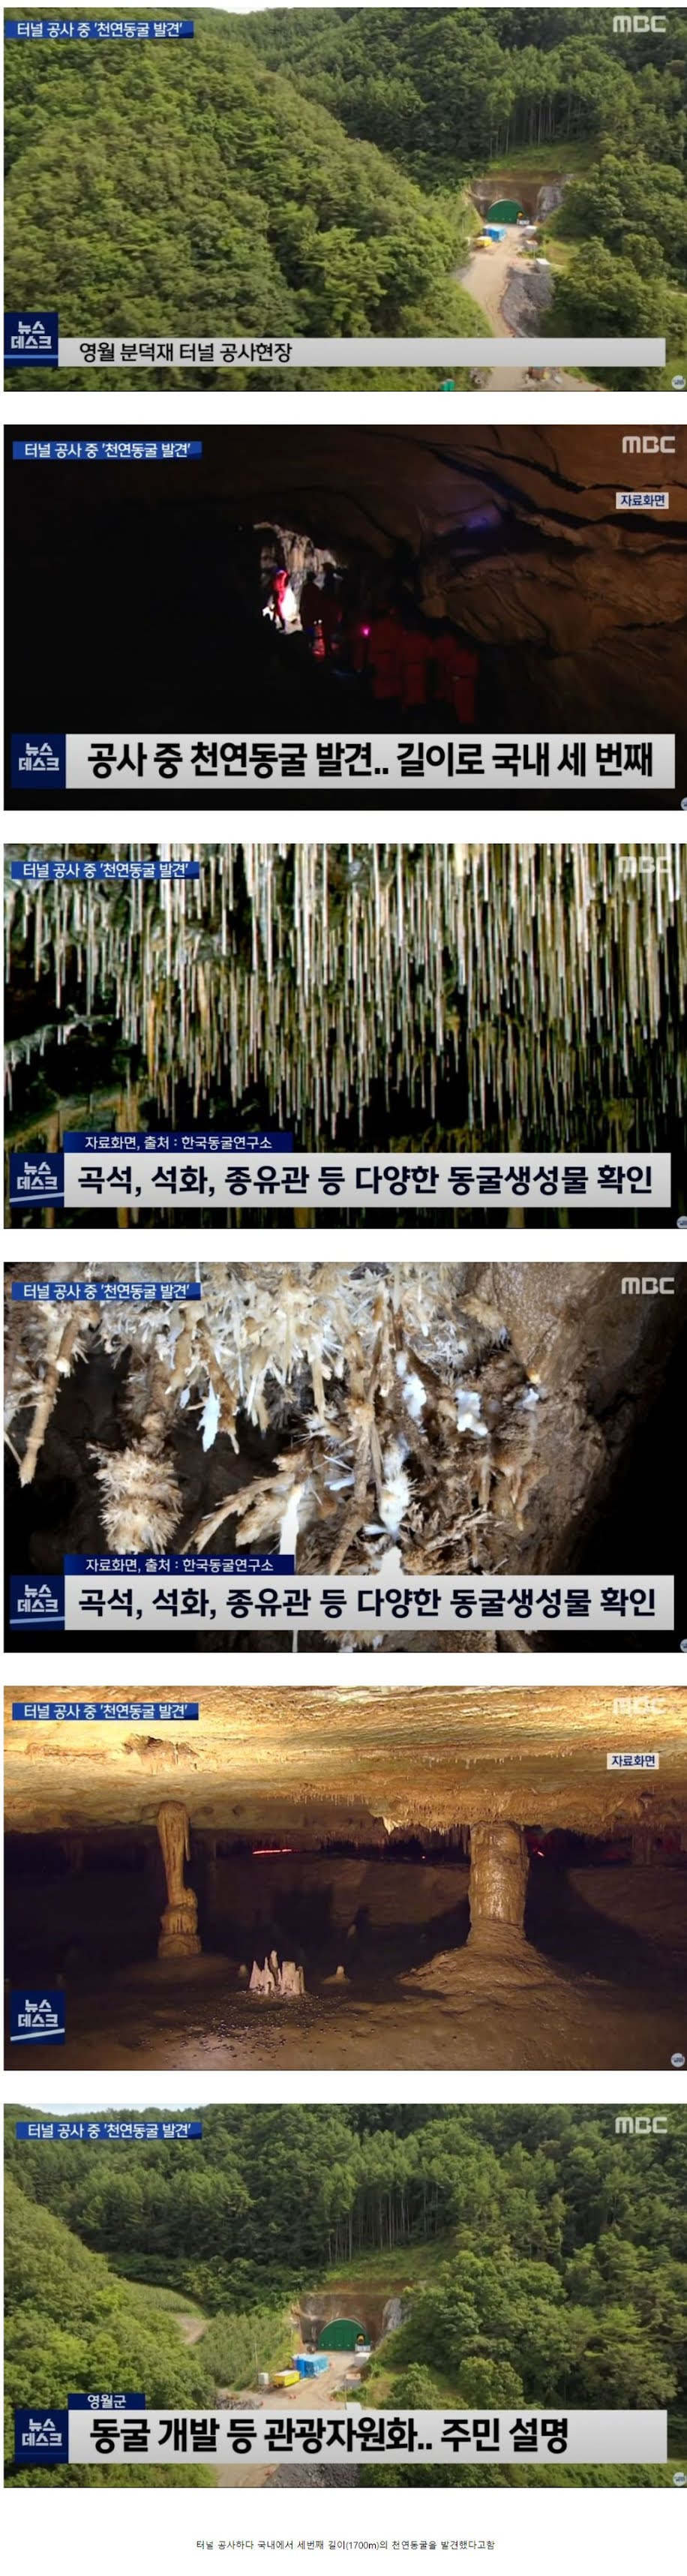 터널공사하다 천연동굴 발견함 - 꾸르